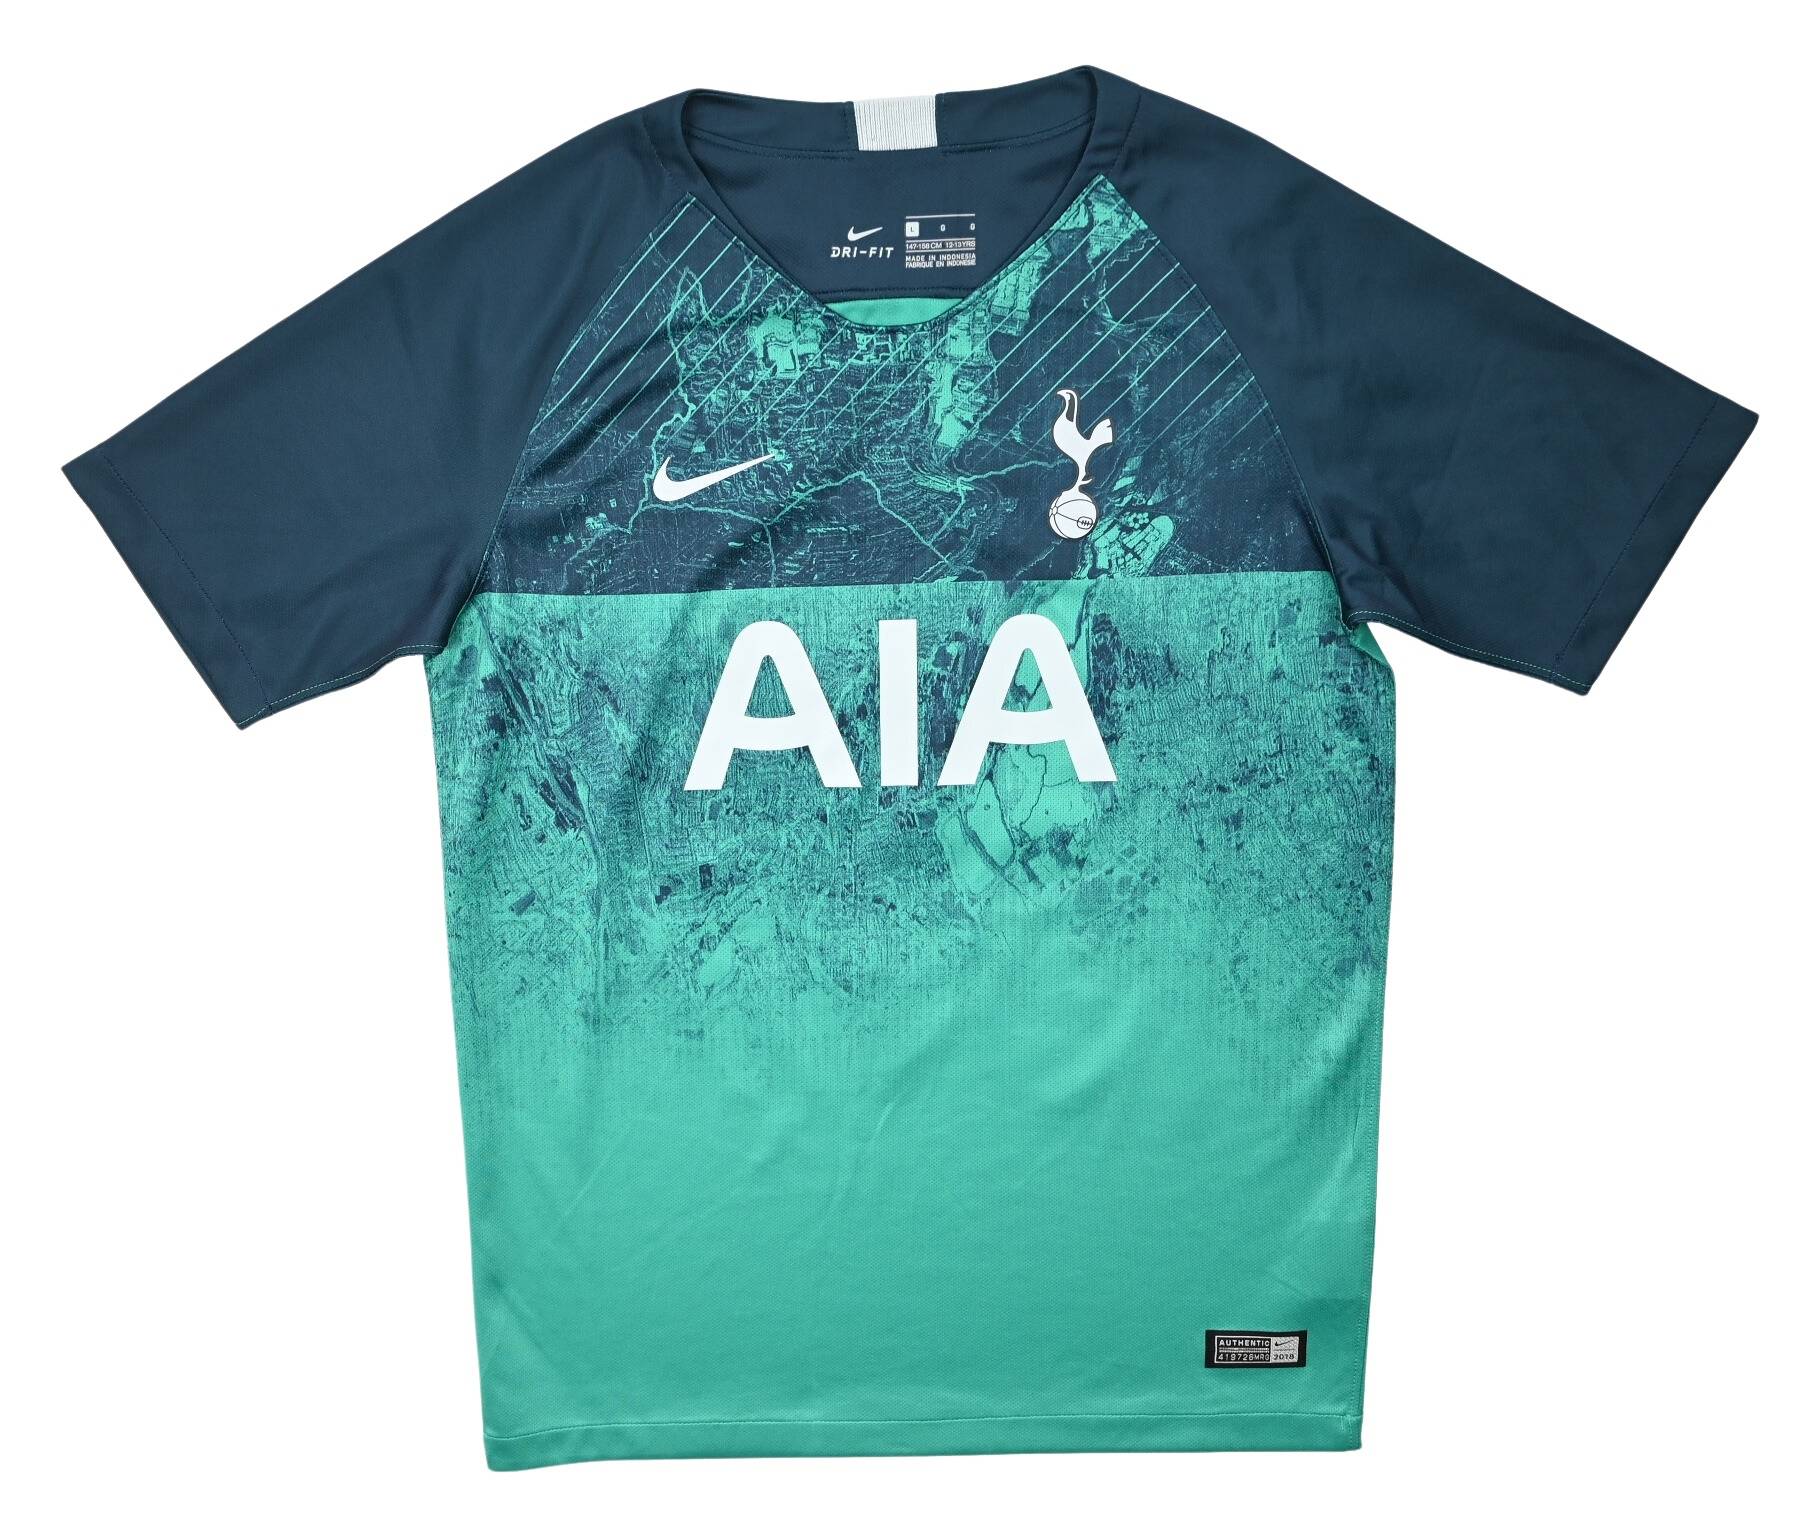 Tottenham Hotspur 2018-19 Kits